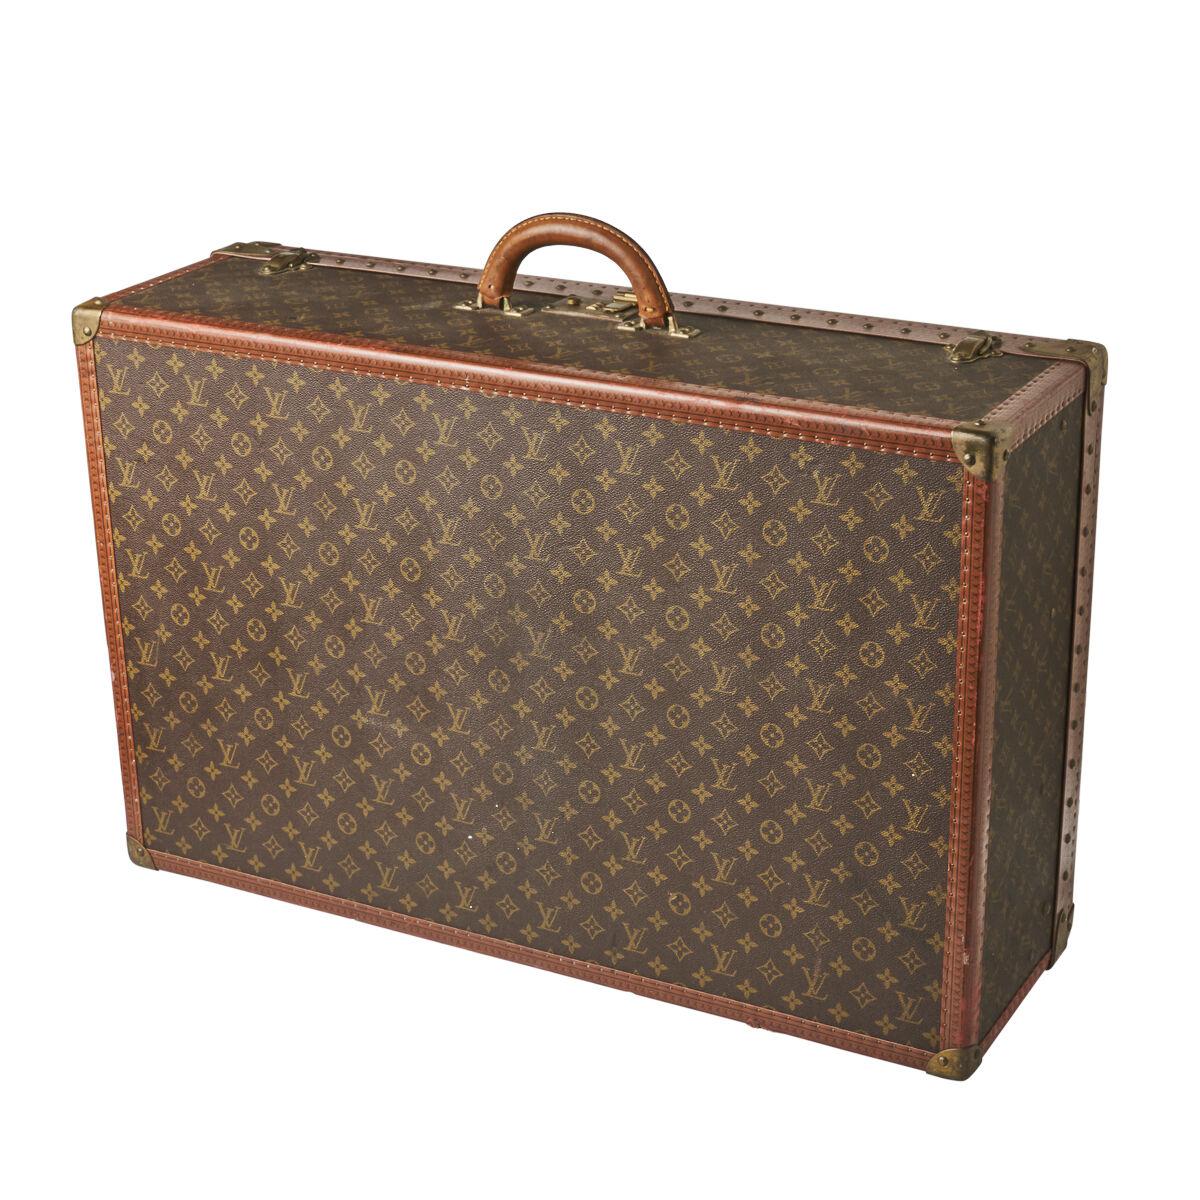 At Auction: LOUIS VUITTON Monogram Canvas Suitcase Alzer 60